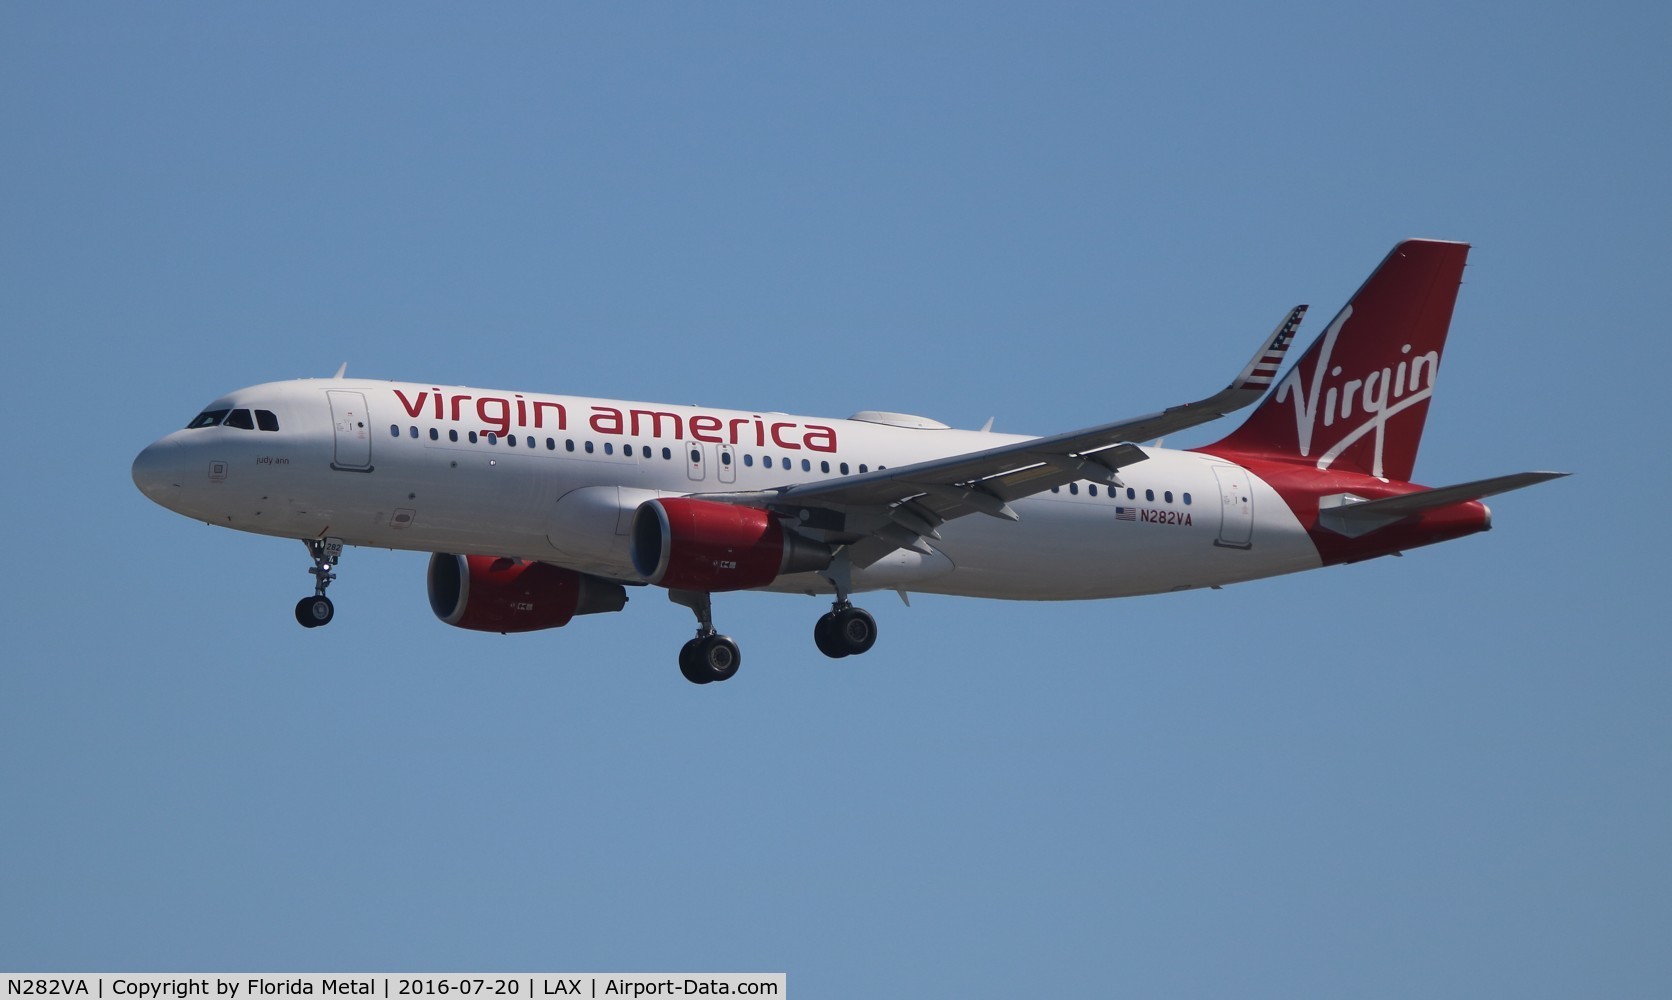 N282VA, 2015 Airbus A320-214 C/N 6704, Virgin America